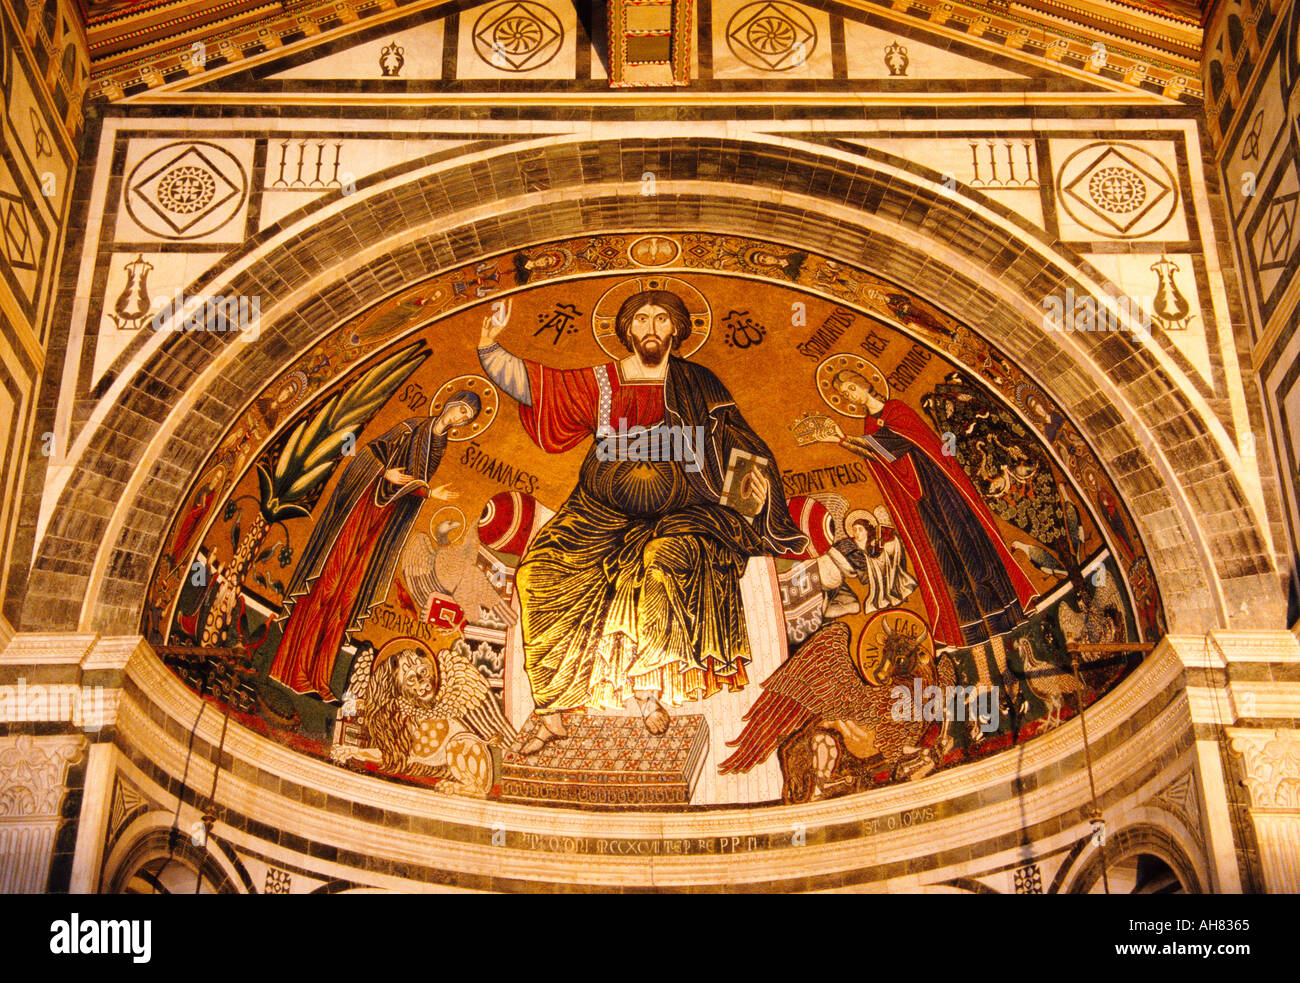 Firenze Toscana Italia San Miniato del Monte. Mosaico di Cristo tra la Vergine e st Minias. St Minias a destra. Foto Stock